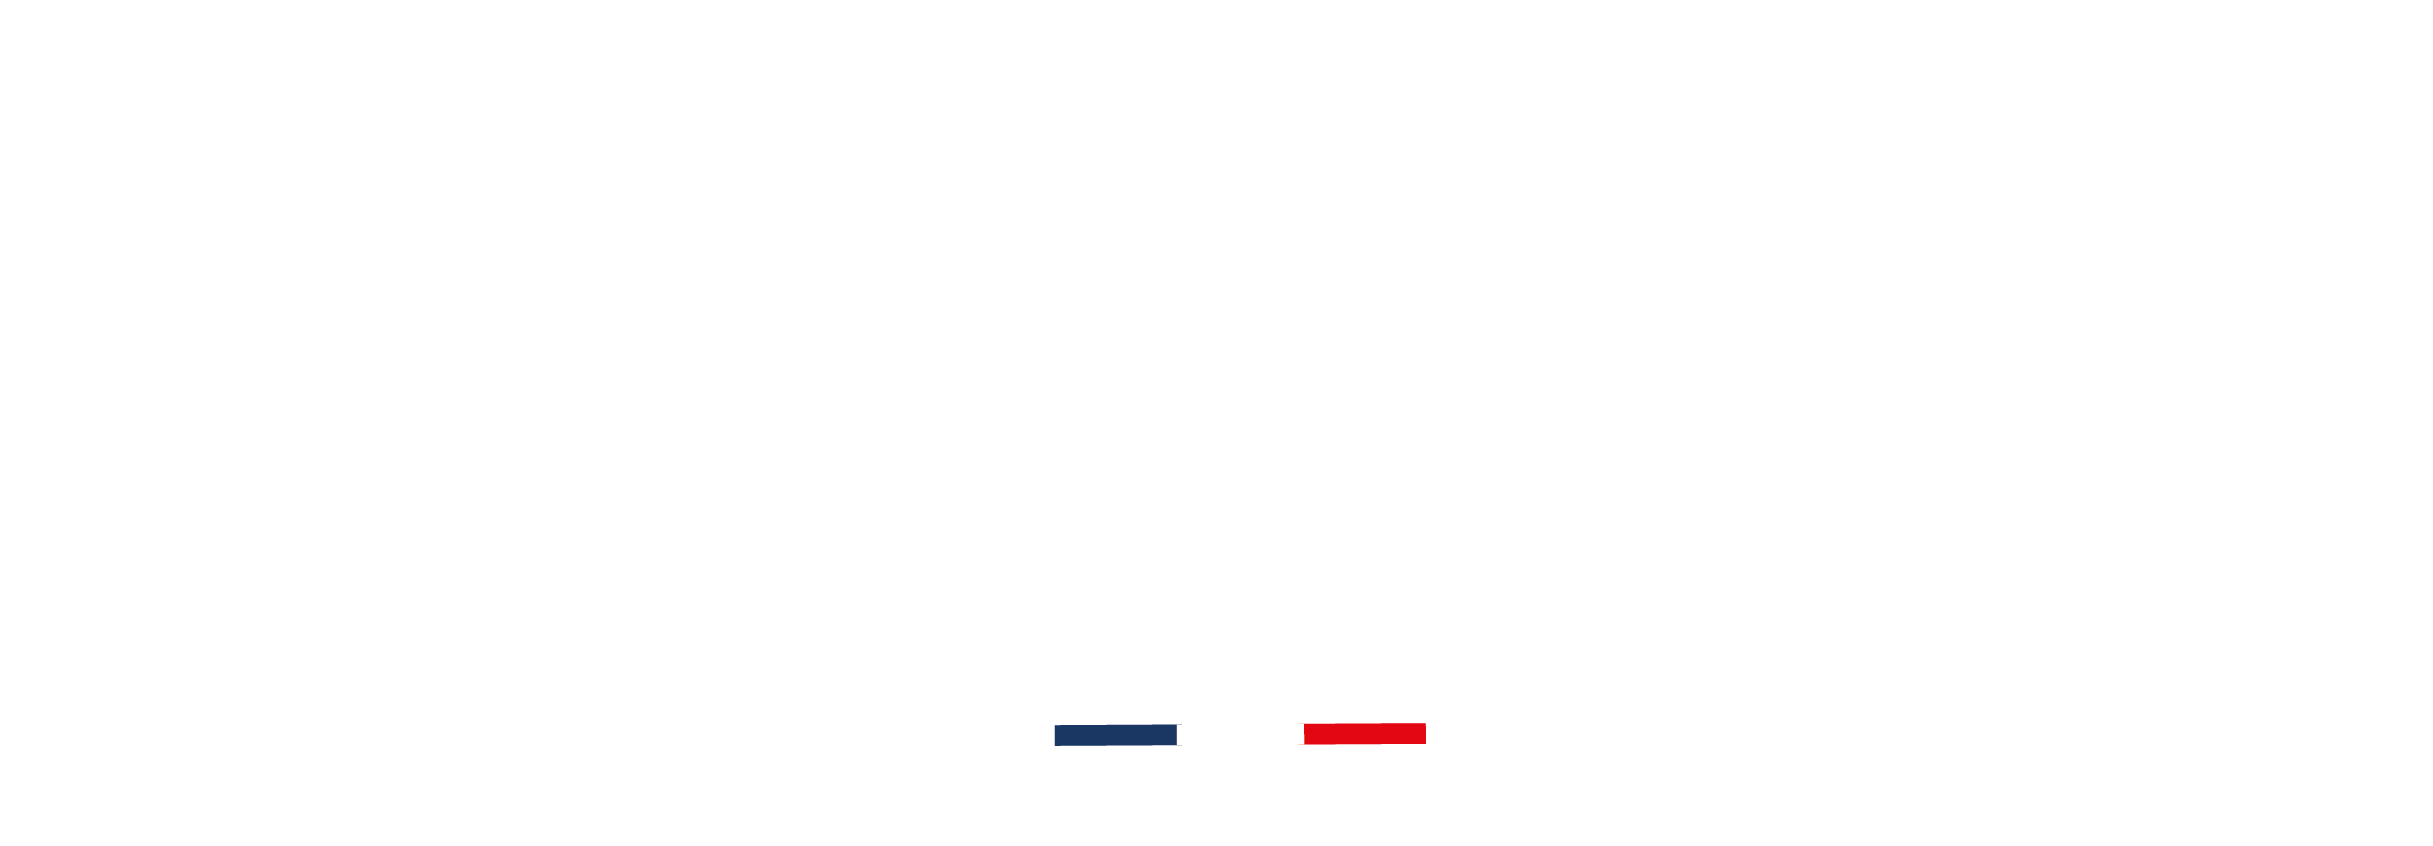 Logo jeannette1850 écriture blanche